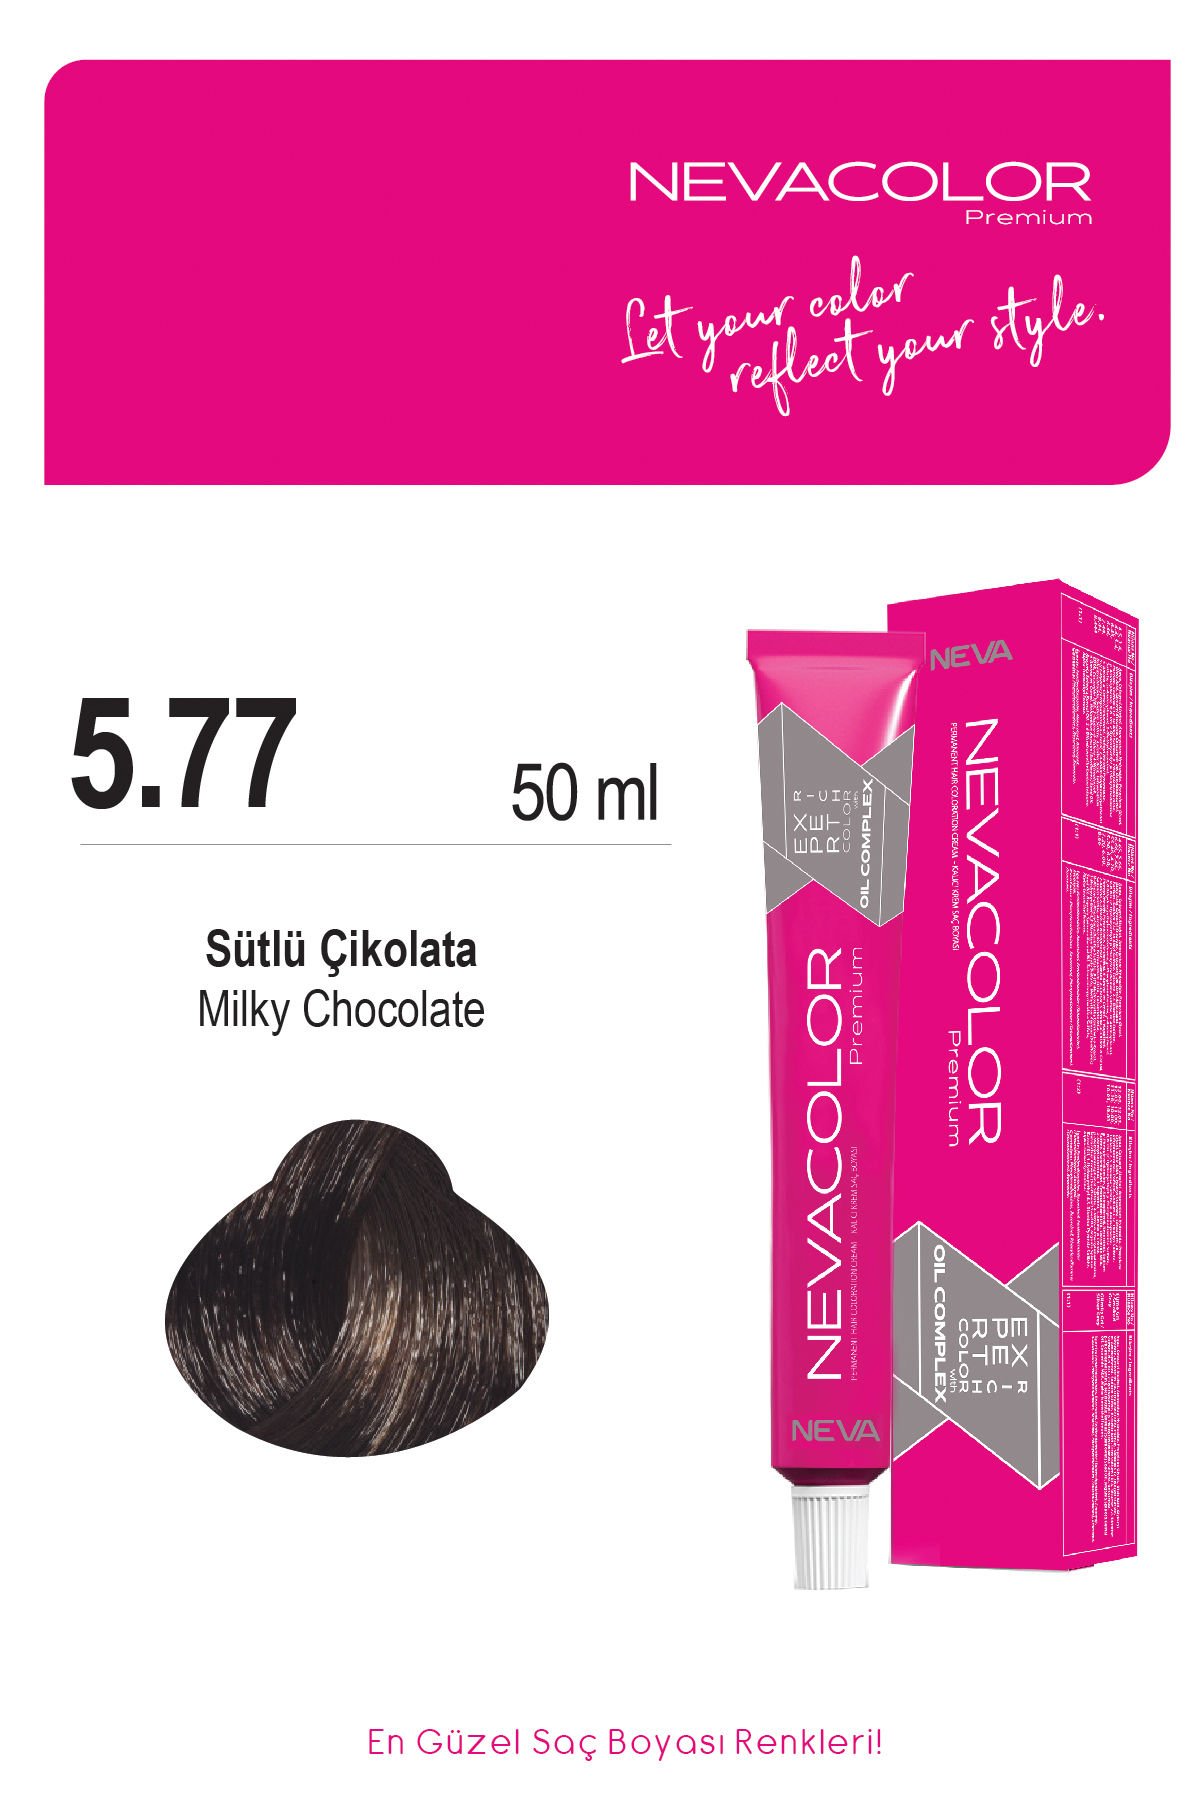 Nevacolor Premium 5.77 Sütlü Çikolata - Kalıcı Krem Saç Boyası 50 g Tüp